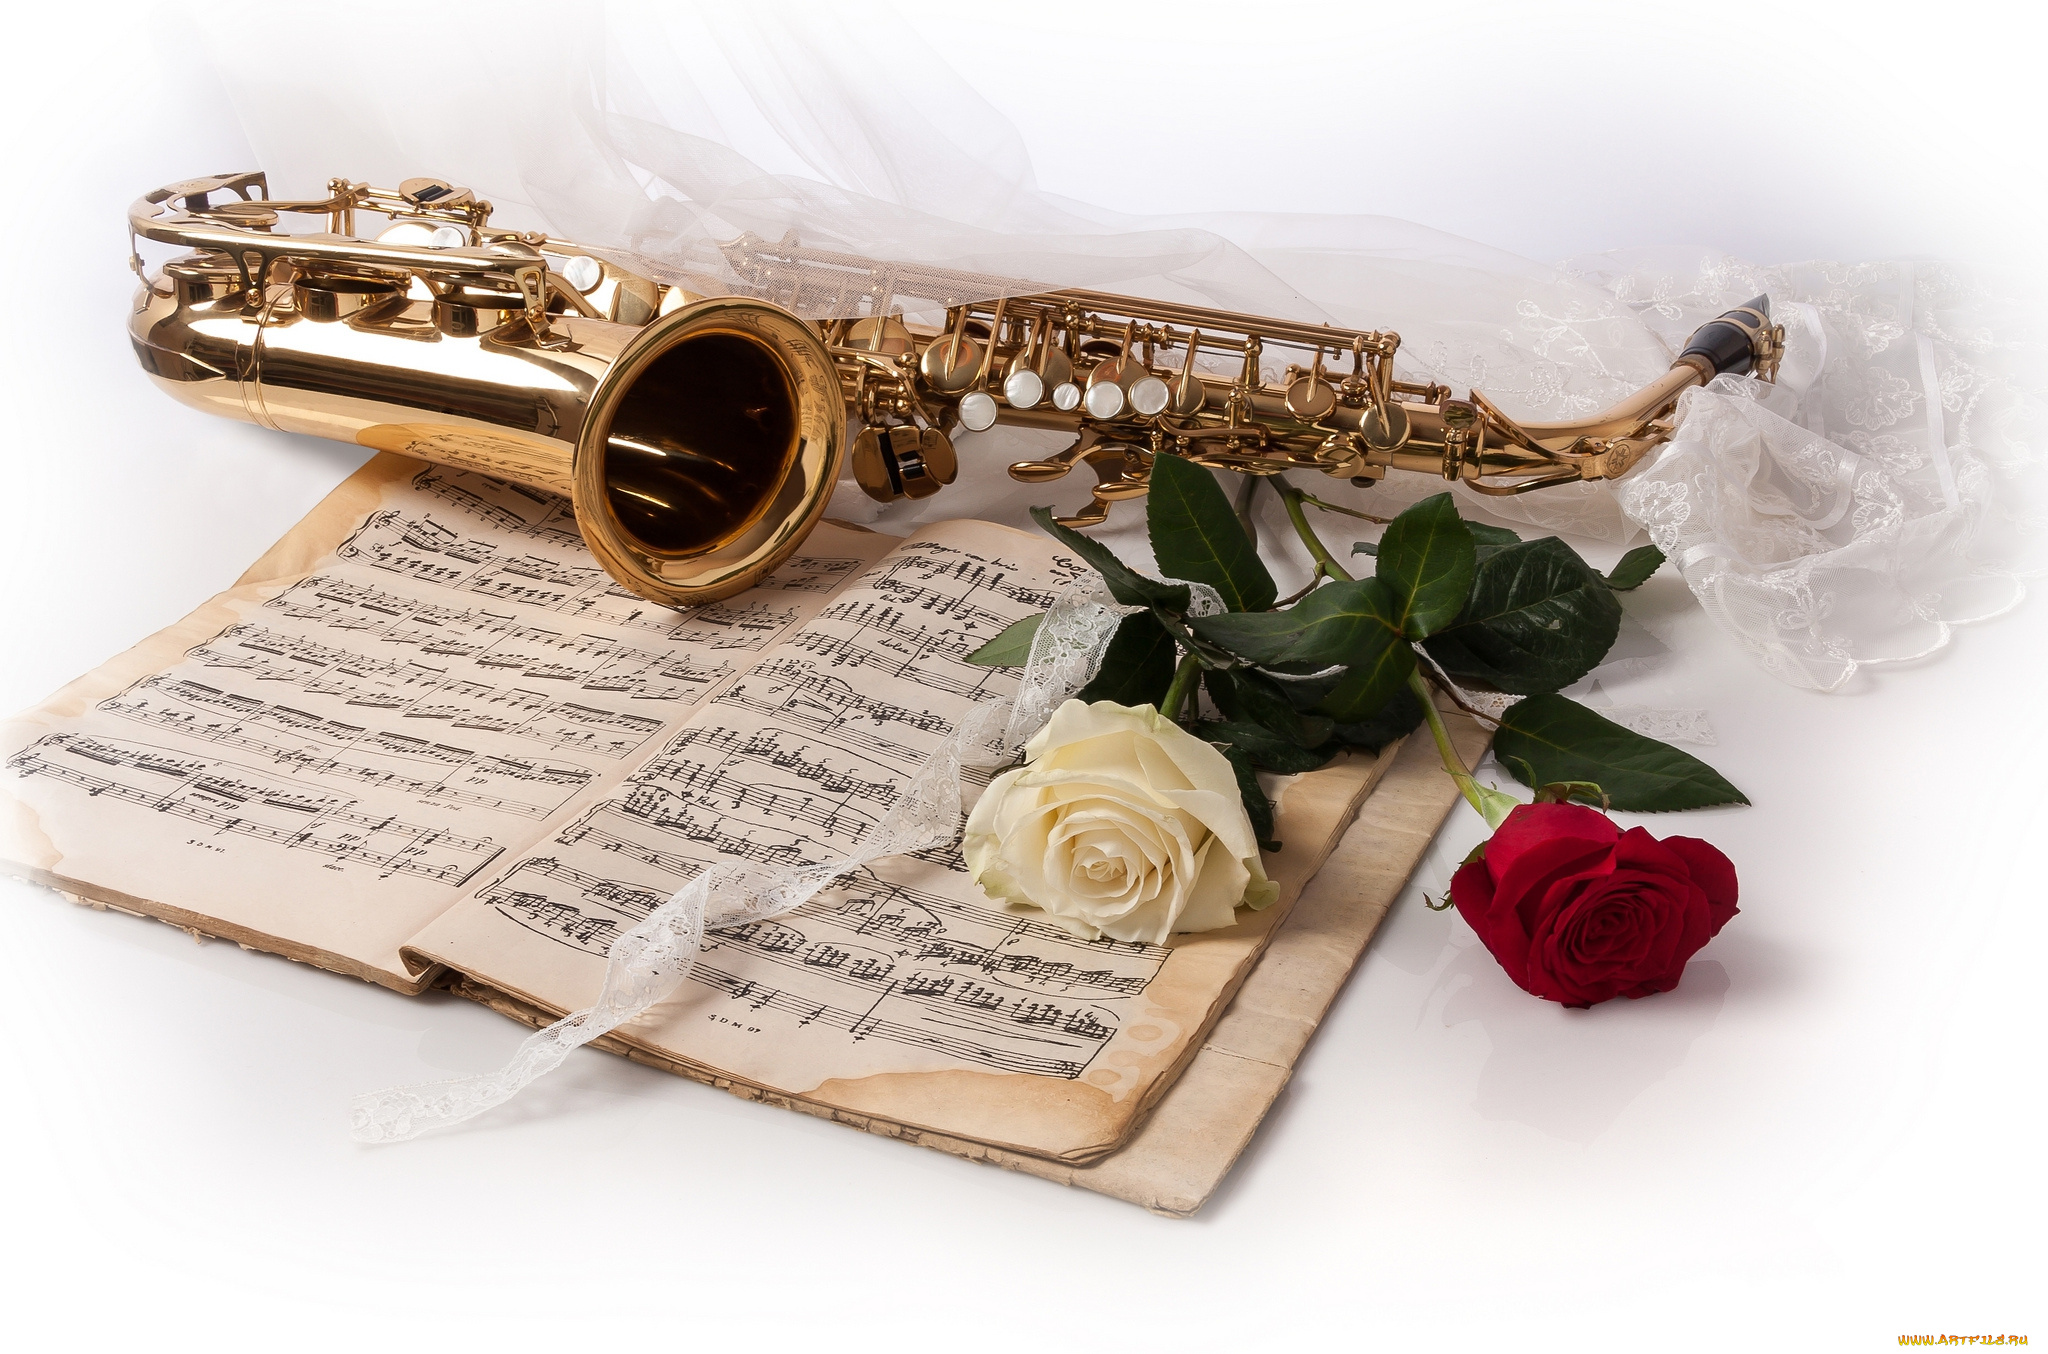 Песни к рождения мужчине. Музыкальные инструменты и цветы. Открытка музыканту. С днём рождения саксофонисту открытки. Цветы для музыканта.